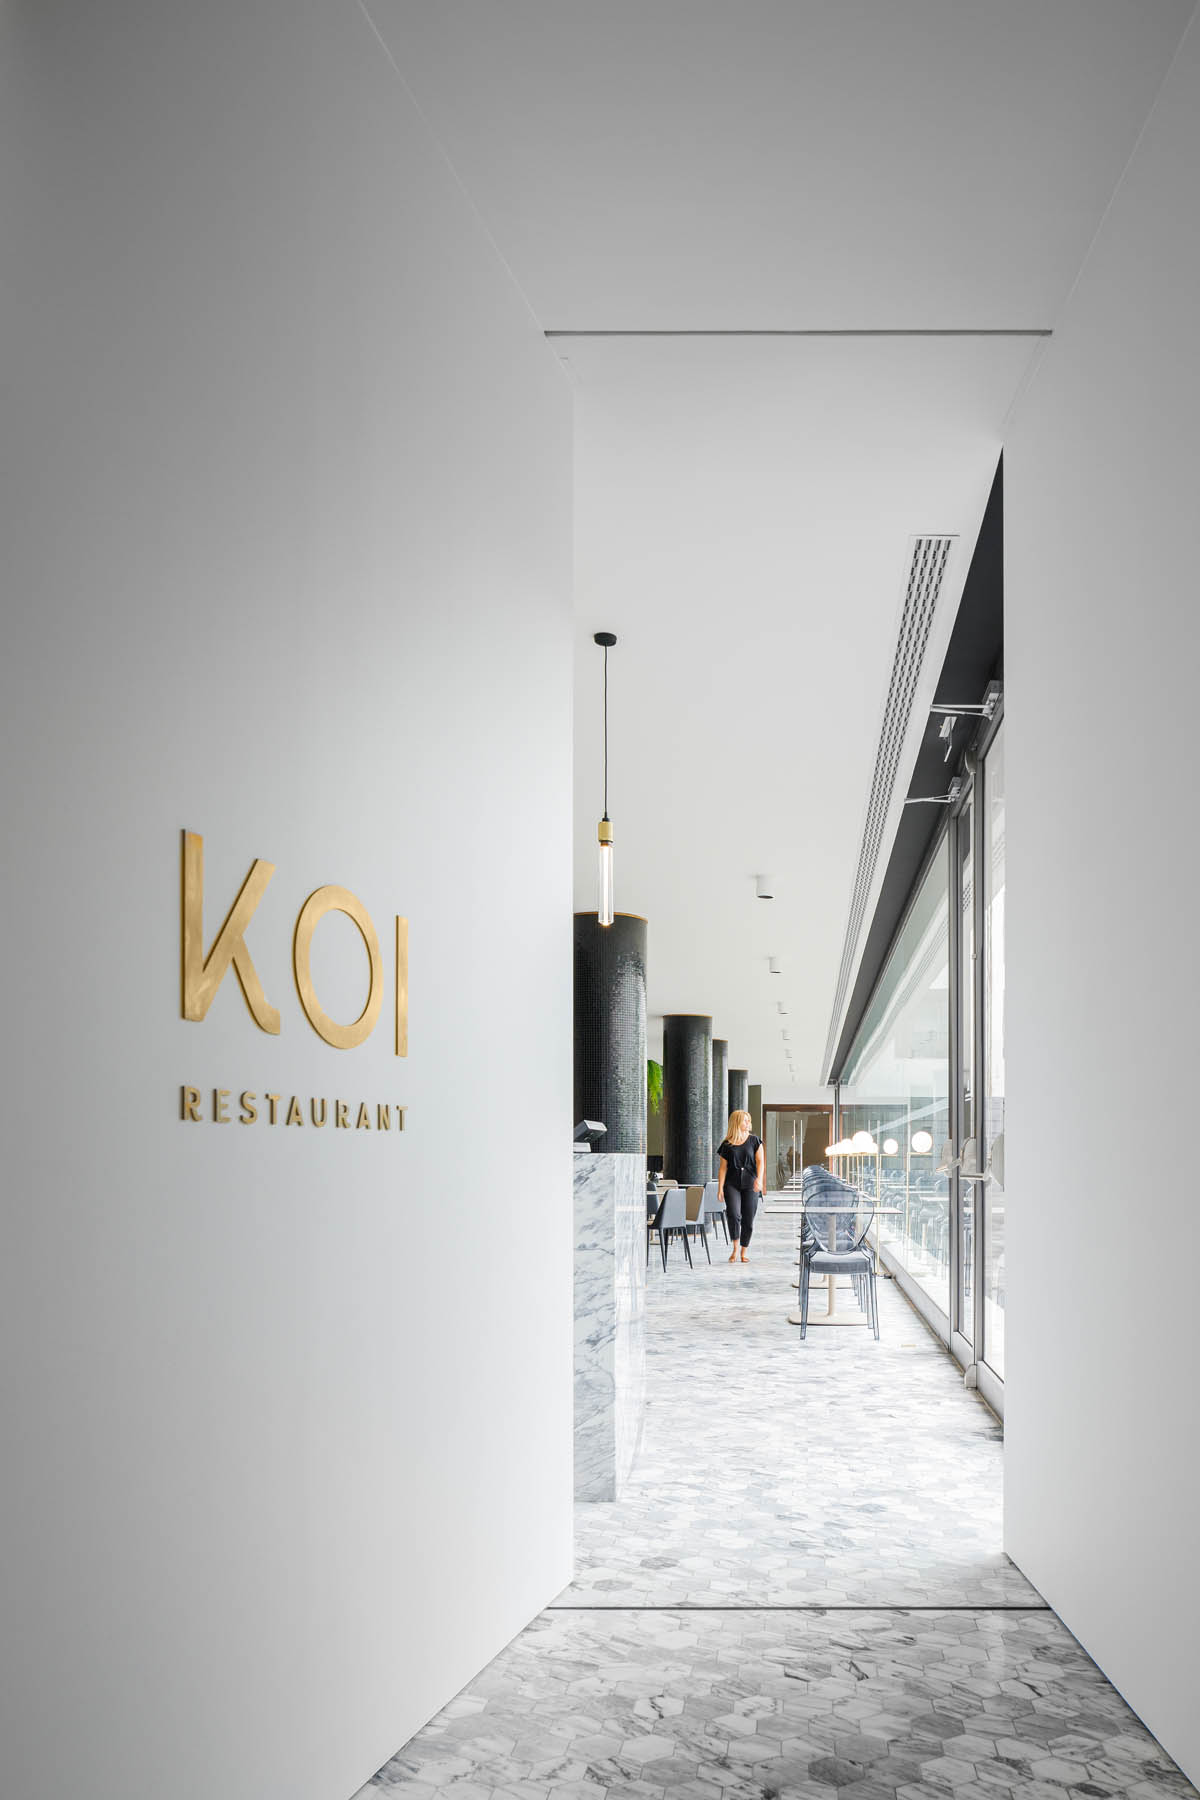 KOI Restaurant by Azoris em Ponta Delgada nos Açores, projecto